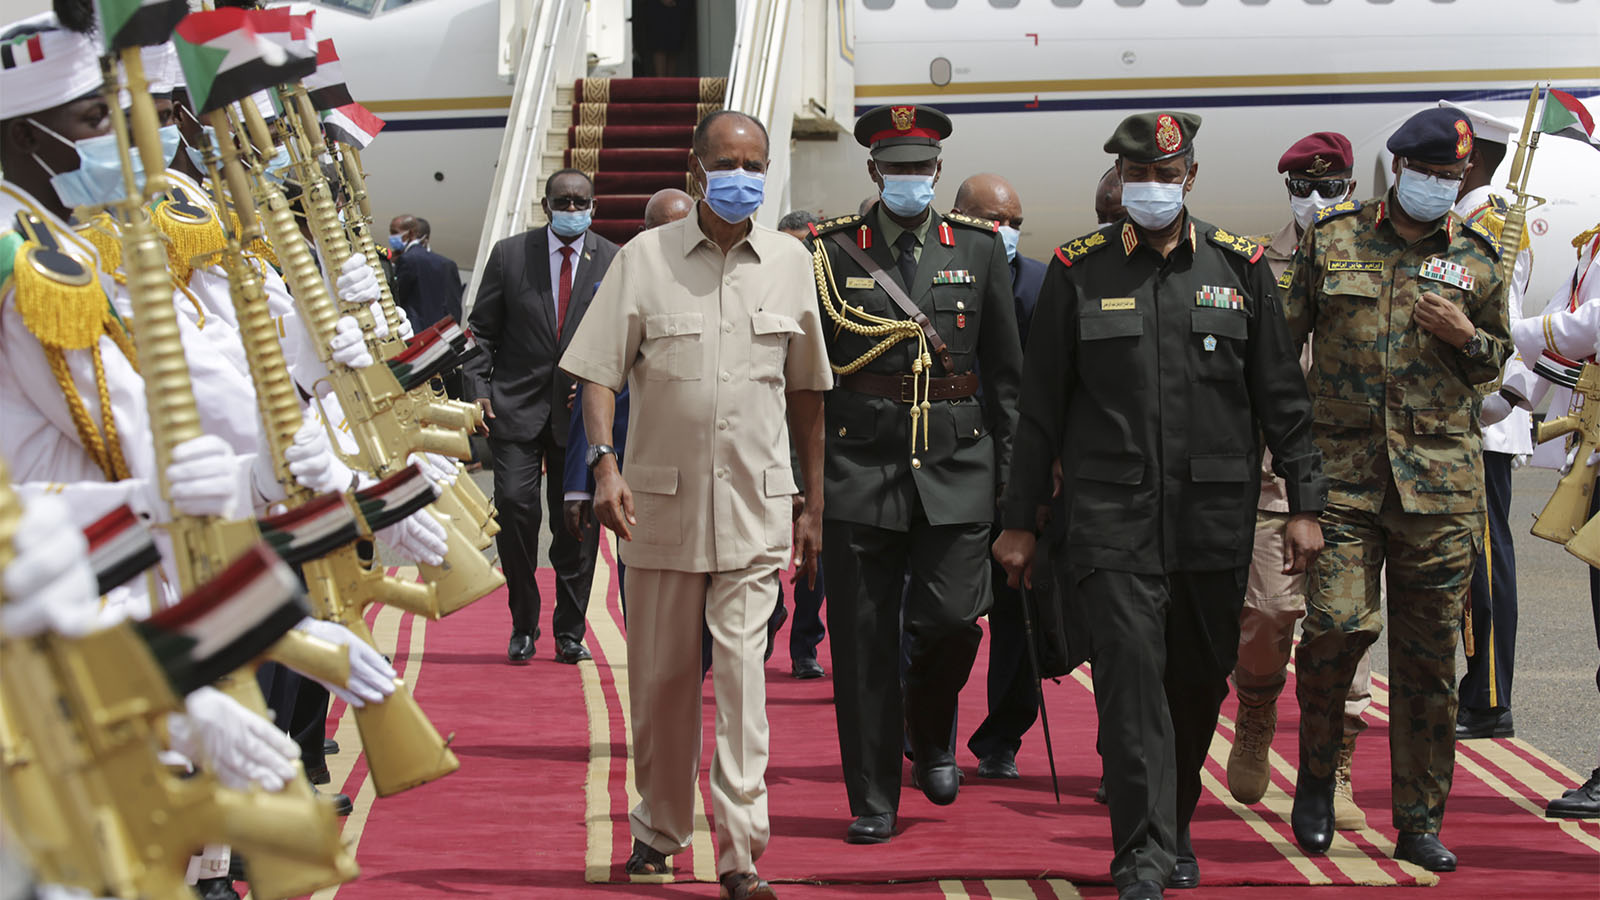 ראש ממשלת המעבר של סודאן, עבד אל-פתאח בורהאן (מימין) עם נשיא אריתריאה איסאייס אפוורקי, בנמל התעופה בבירת סודאן. צילום: (AP Photo/Marwan Ali)